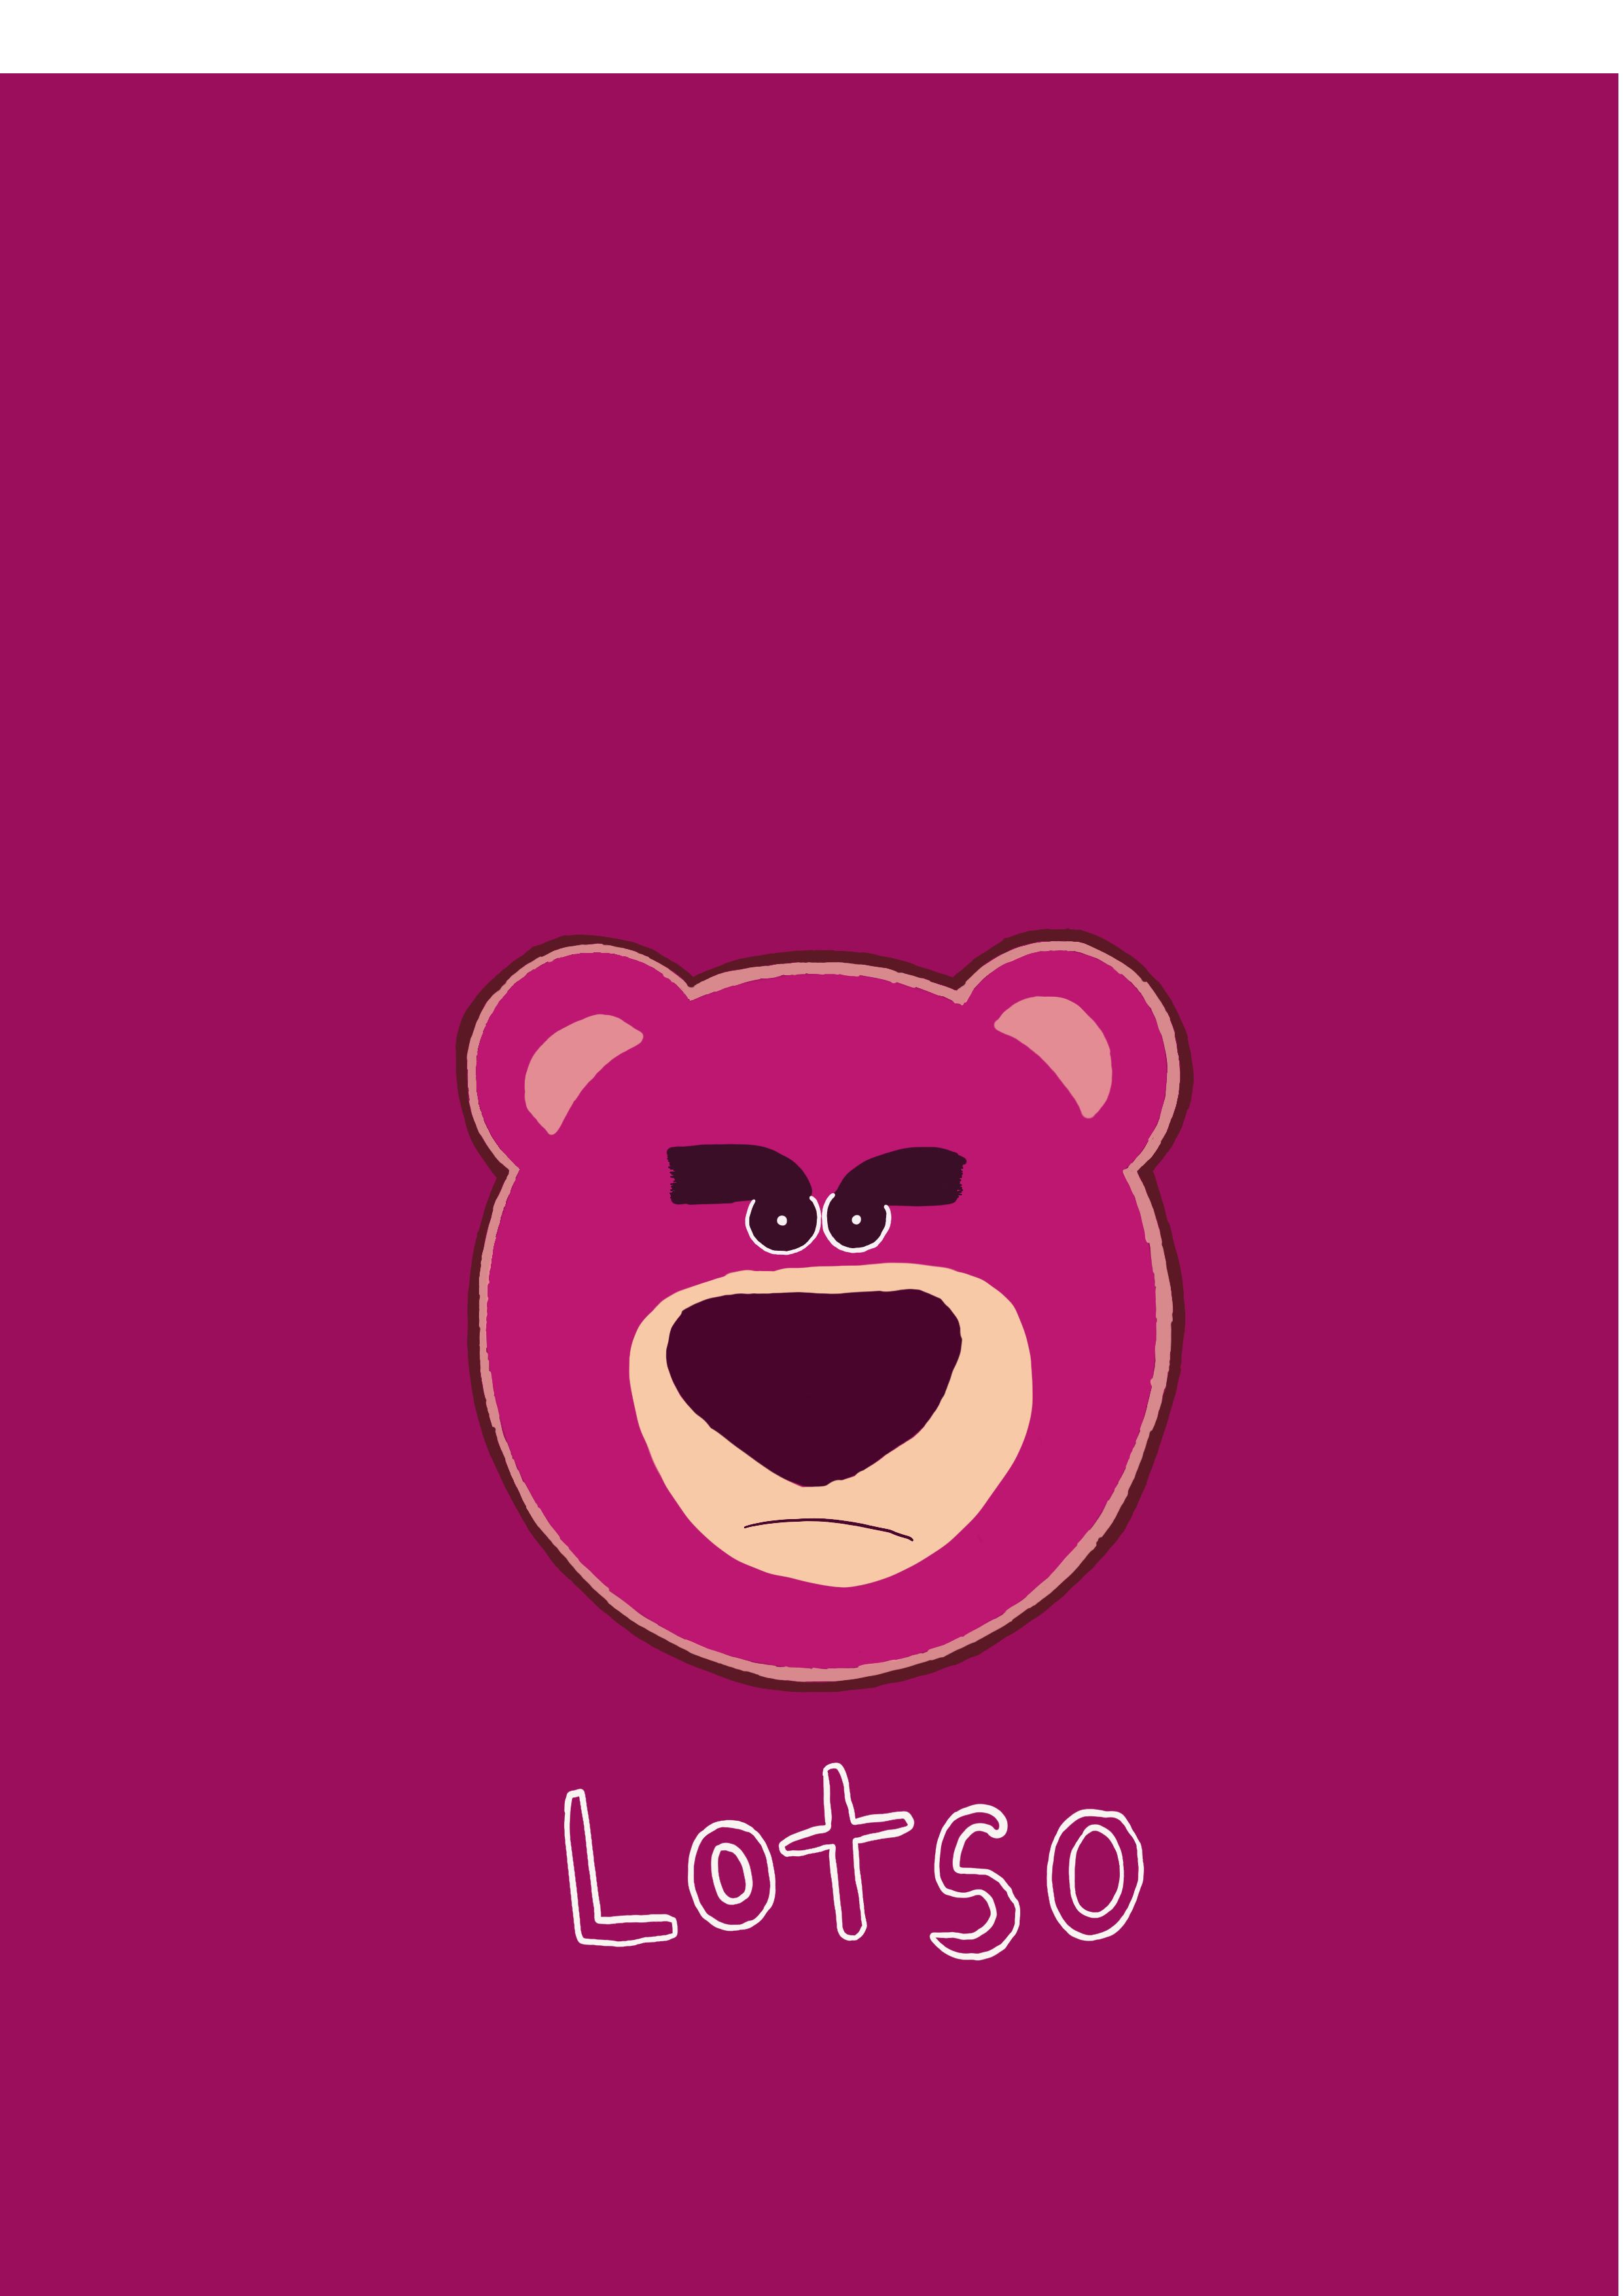 Để làm mới màn hình điện thoại của bạn, hãy cập nhật hình nền gấu Lotso dễ thương! Hình ảnh này sẽ mang lại cảm giác ấm áp, vui tươi và đáng yêu cho ngày mới của bạn.